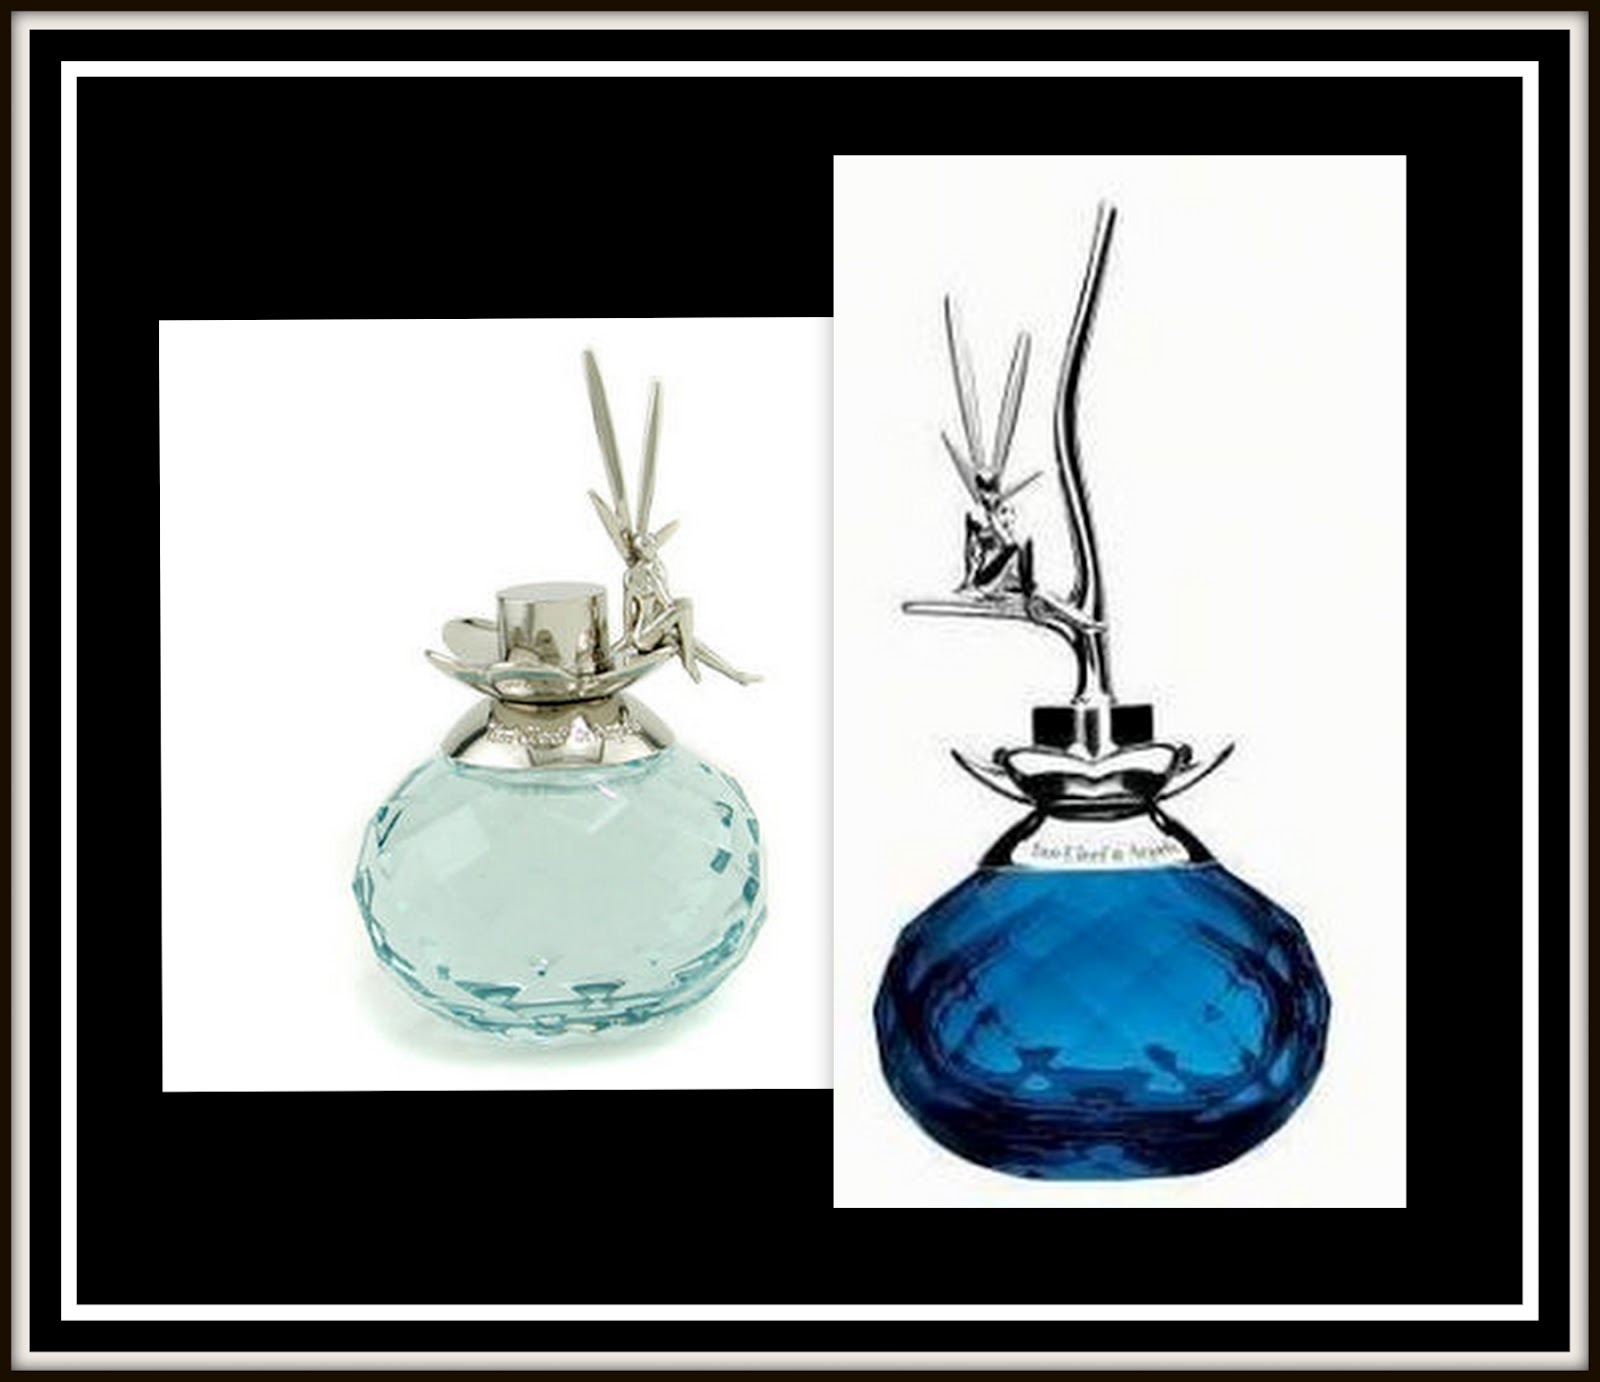 Schep Immoraliteit Gepolijst Sensual Perfume Scents: Feerie Parfum by Van Cleef & Arpels